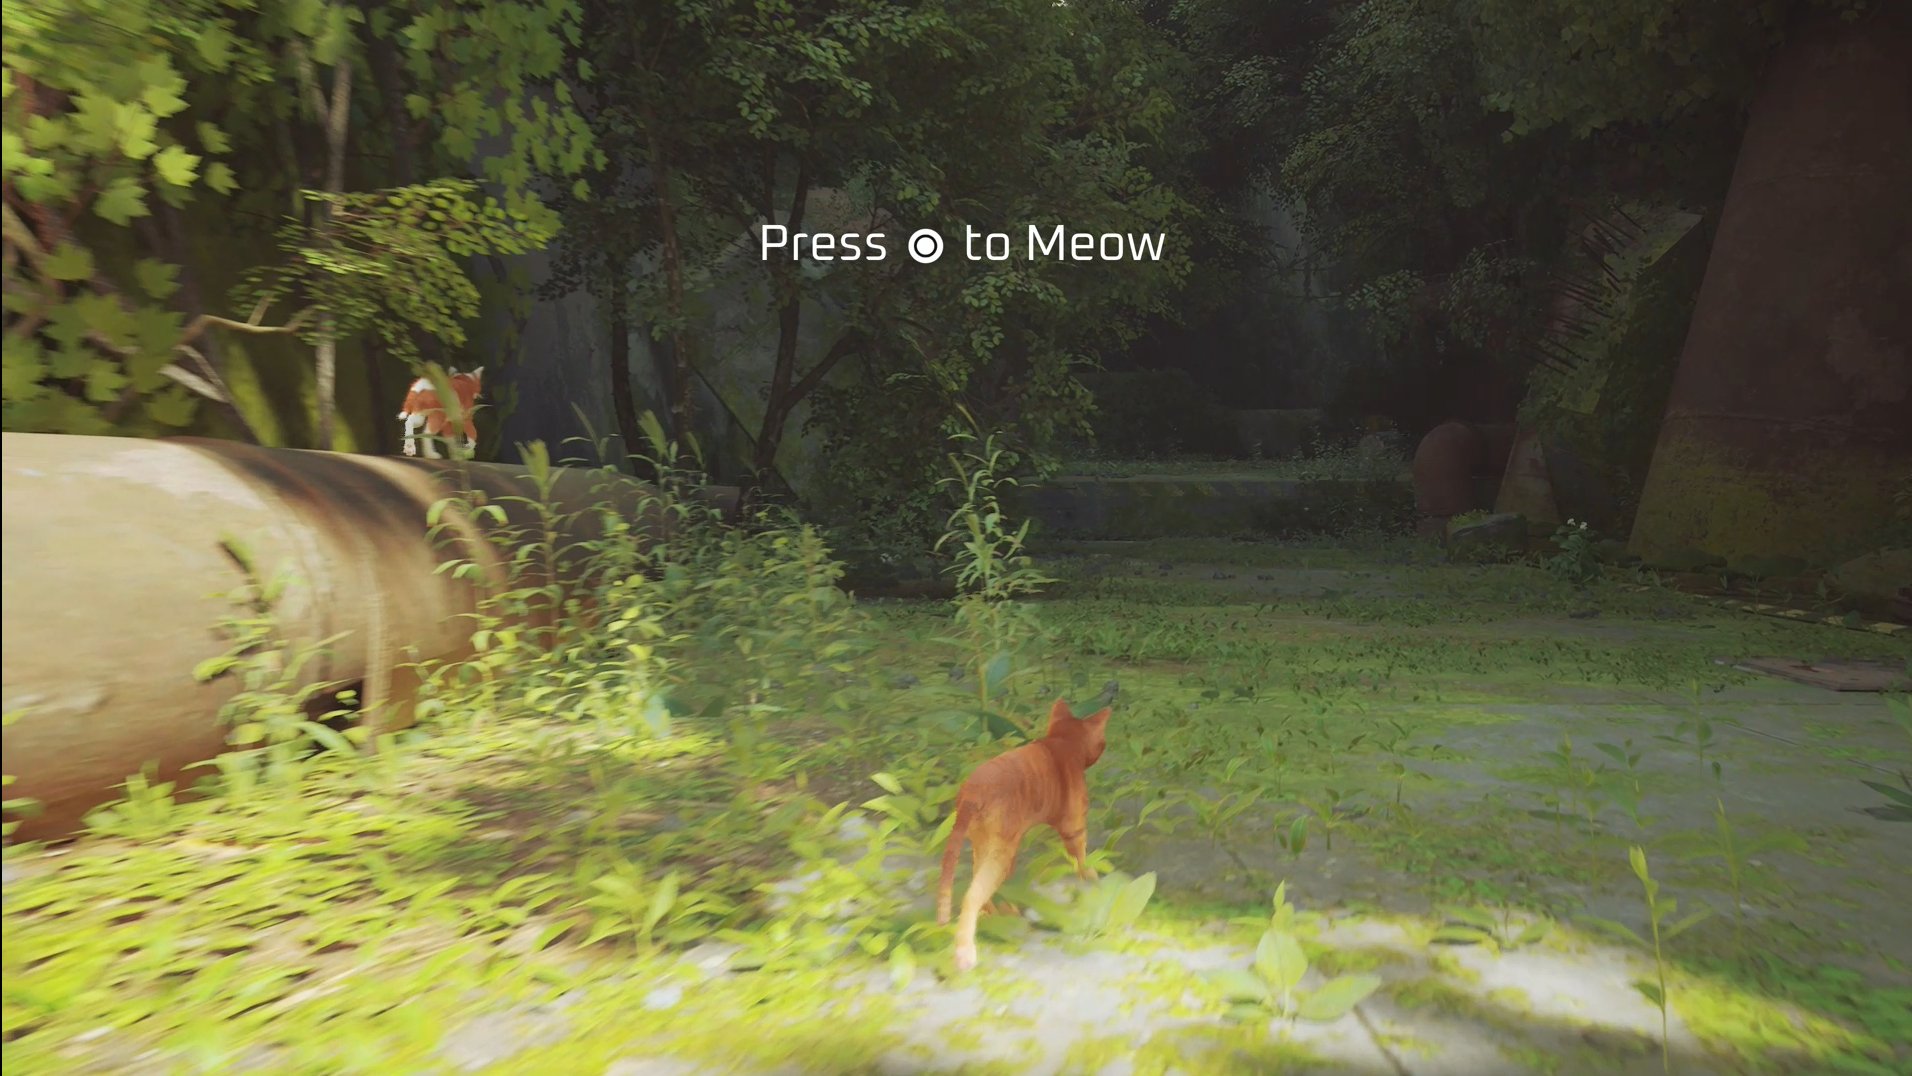 Stray: veja lançamento, gameplay e requisitos do 'Jogo do Gato